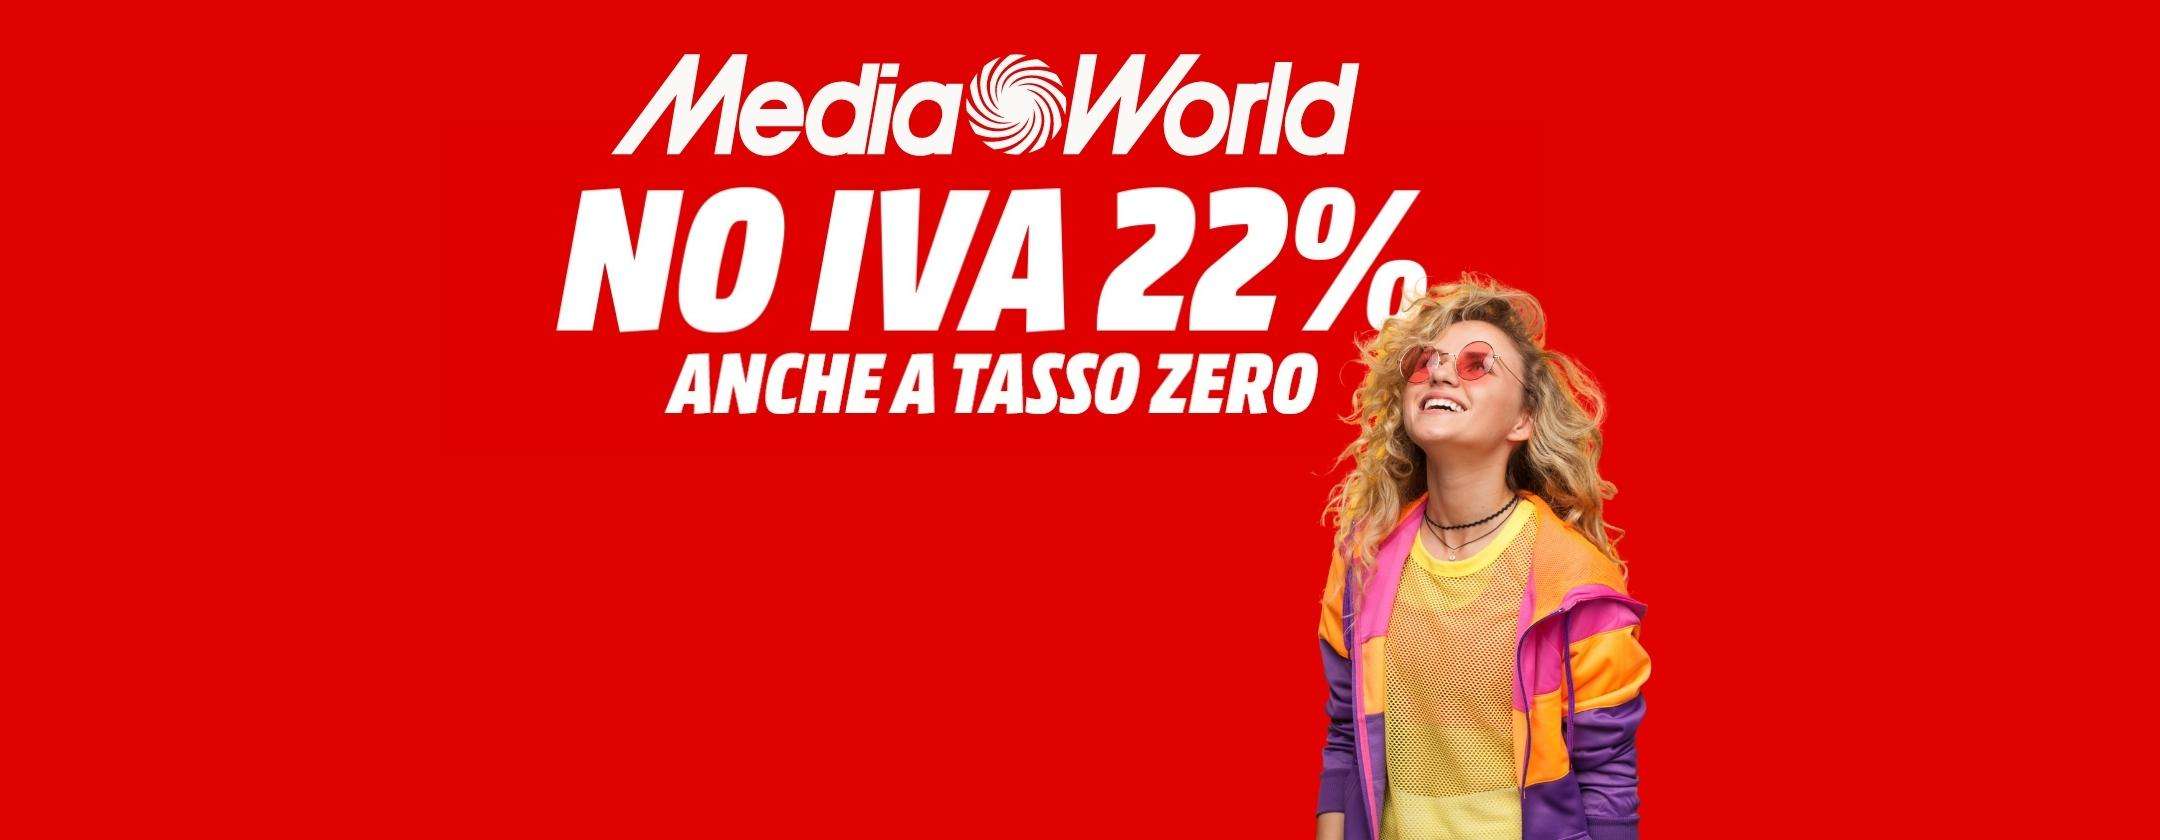 MediaWorld NO IVA 22% è arrivato: ecco tutti i migliori smartphone